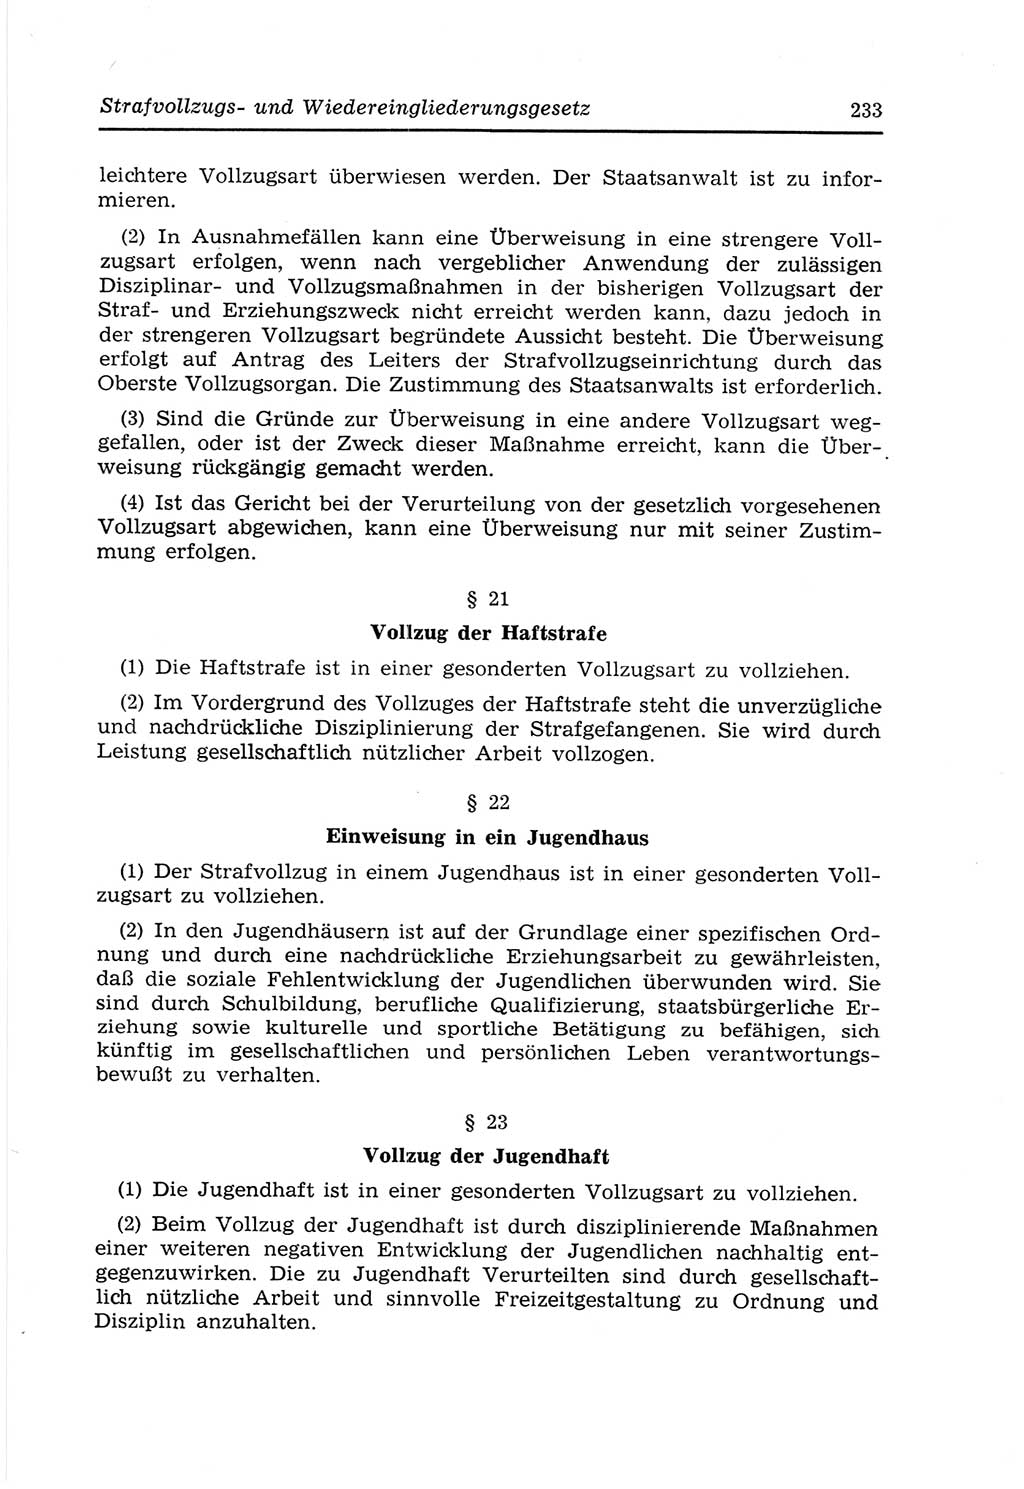 Strafvollzugs- und Wiedereingliederungsgesetz (SVWG) der Deutschen Demokratischen Republik (DDR) 1968, Seite 233 (SVWG DDR 1968, S. 233)